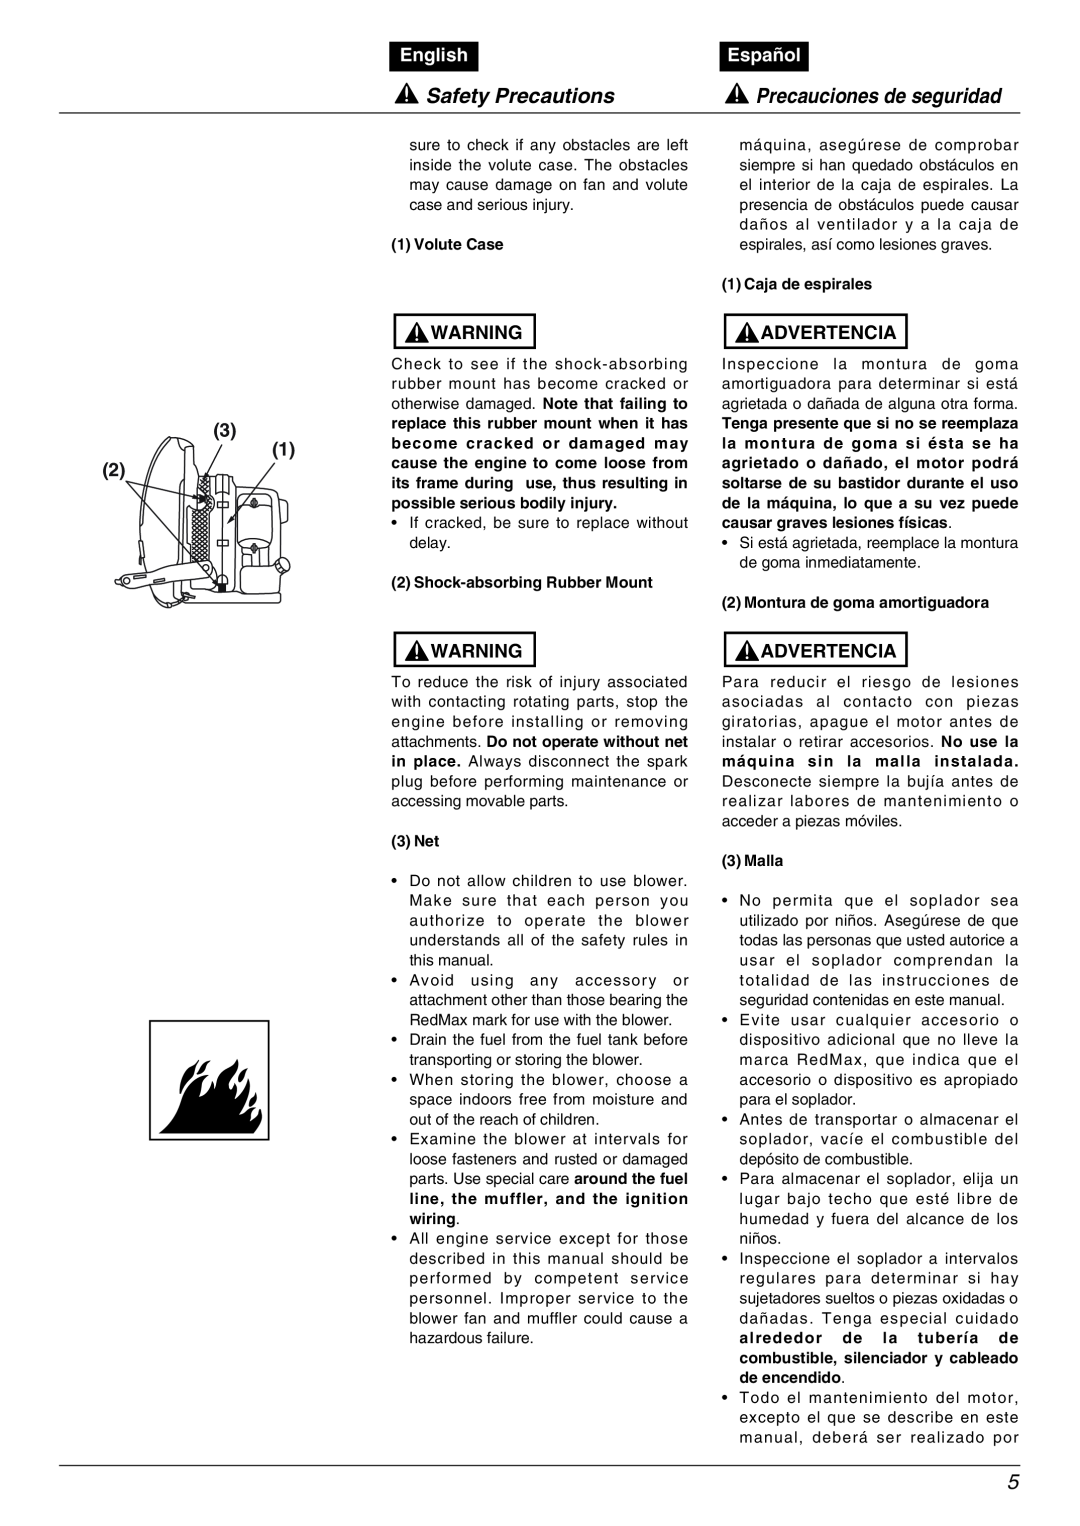 RedMax EBZ5000RH manual Safety Precautions, Precauciones de seguridad, English, Español, Advertencia 